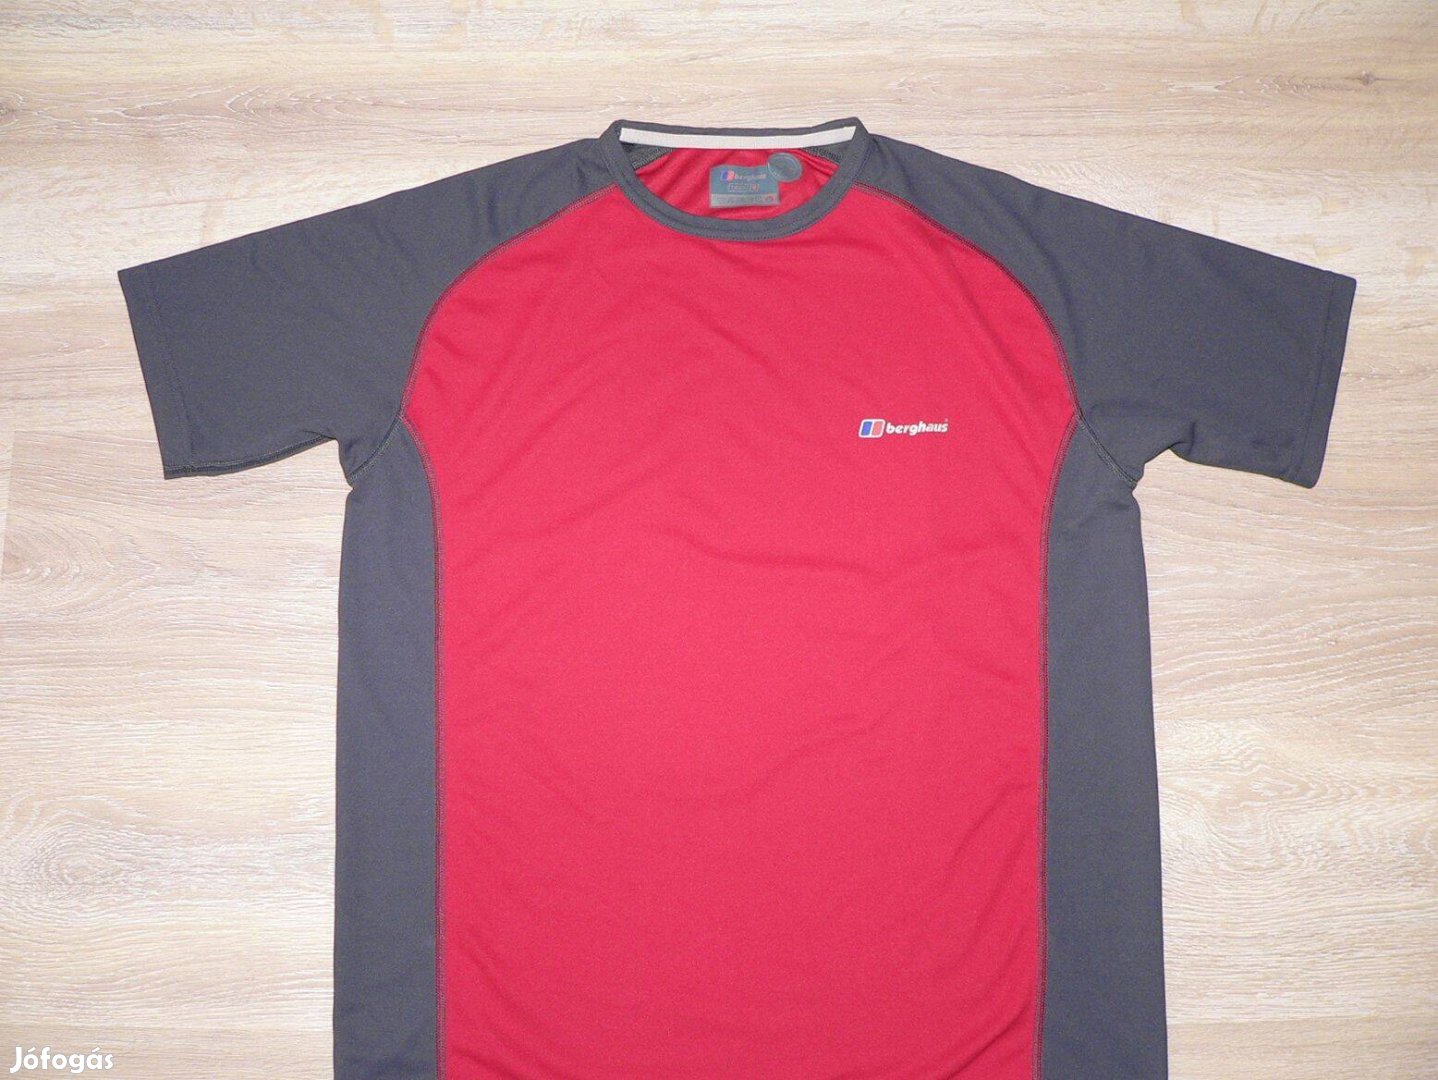 Berghaus Tech-T rövid ujjú póló, aláöltöző (M)